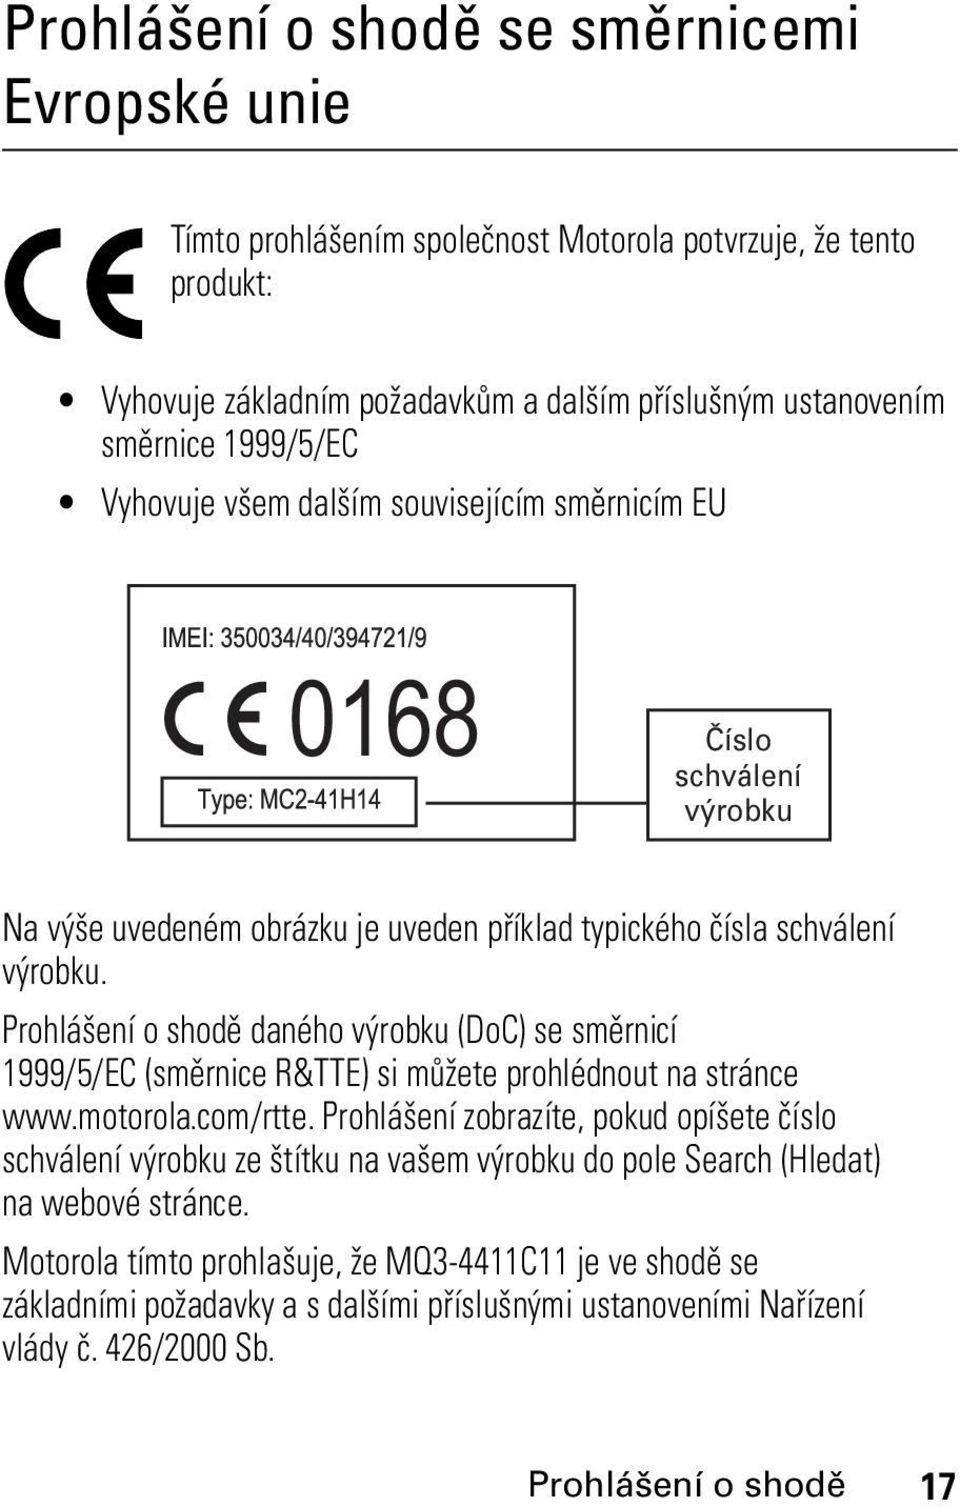 Prohlášení o shodě daného výrobku (DoC) se směrnicí 1999/5/EC (směrnice R&TTE) si můžete prohlédnout na stránce www.motorola.com/rtte.